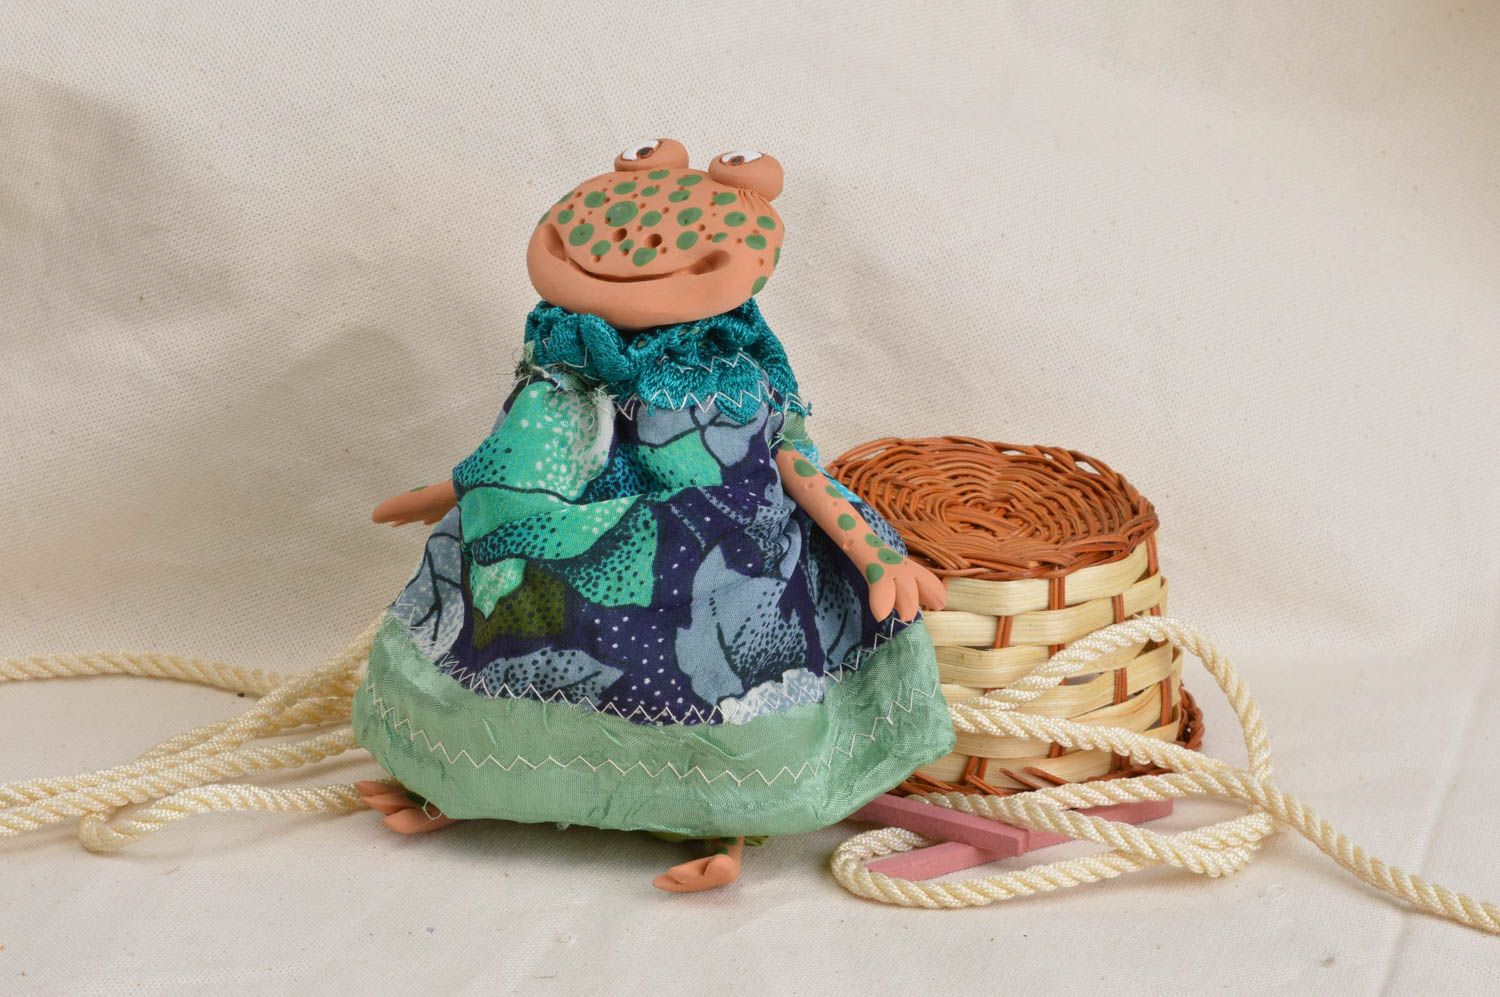 Игрушка из глины и ткани лягушка в платье небольшого размера ручной работы фото 1